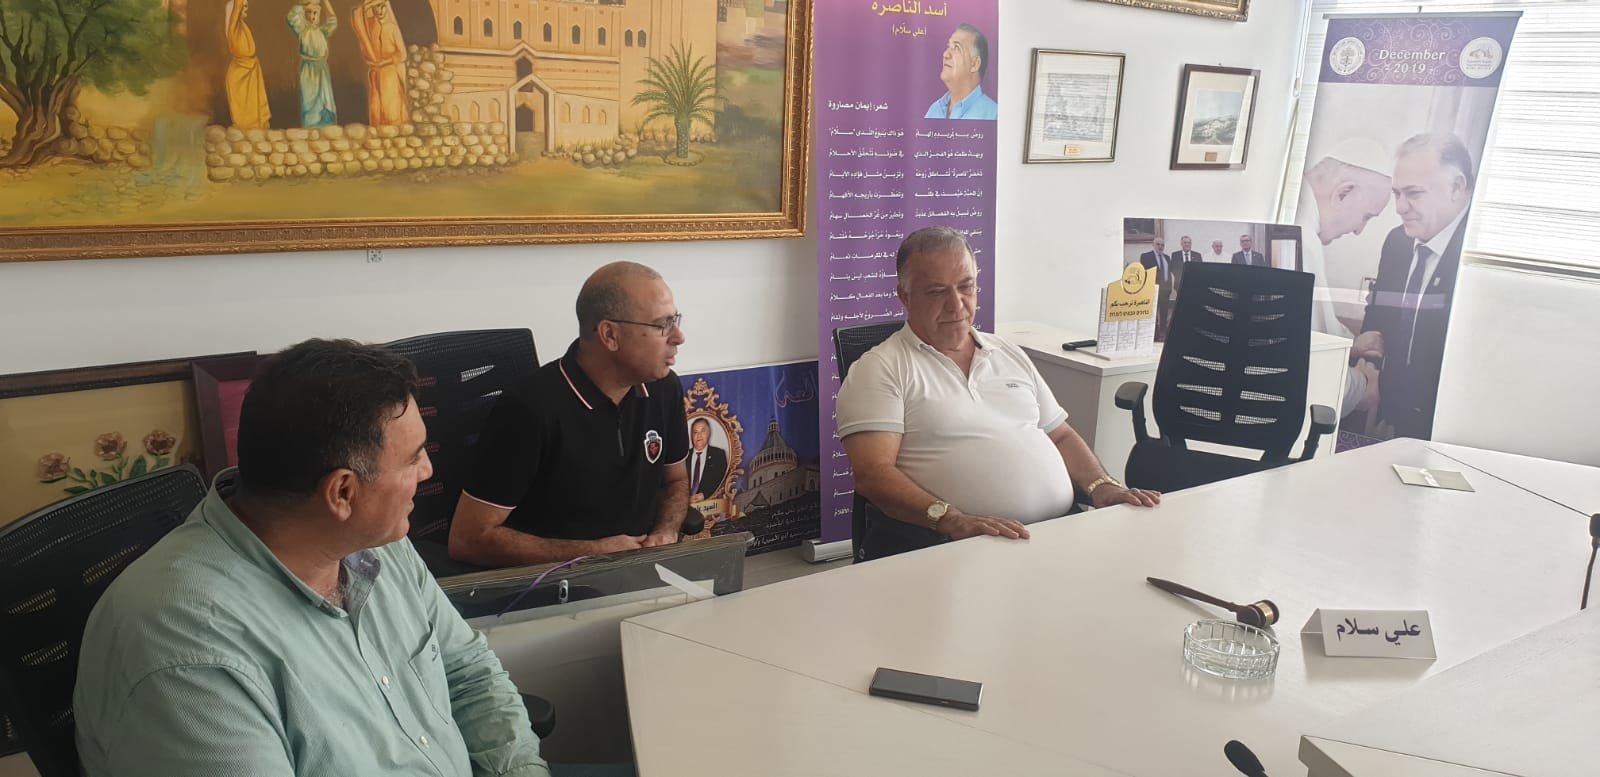 الناصرة: معلمو "عمال" ومديرها يلتقون رئيس البلدية علي سلاّم-5